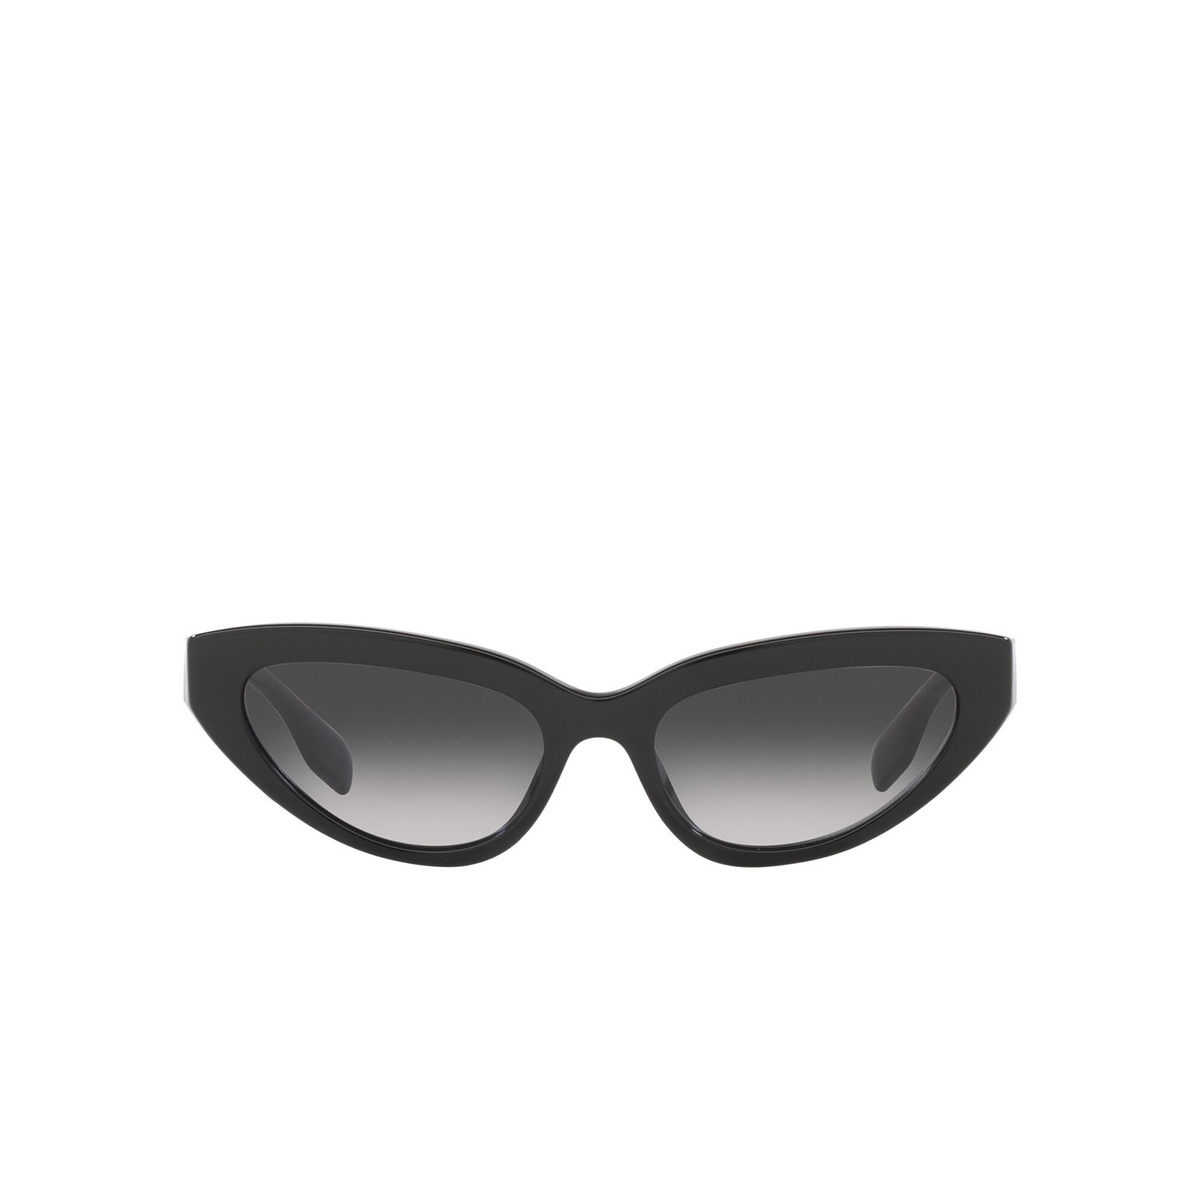 Burberry DEBBIE Sunglasses 30018G Black - front view